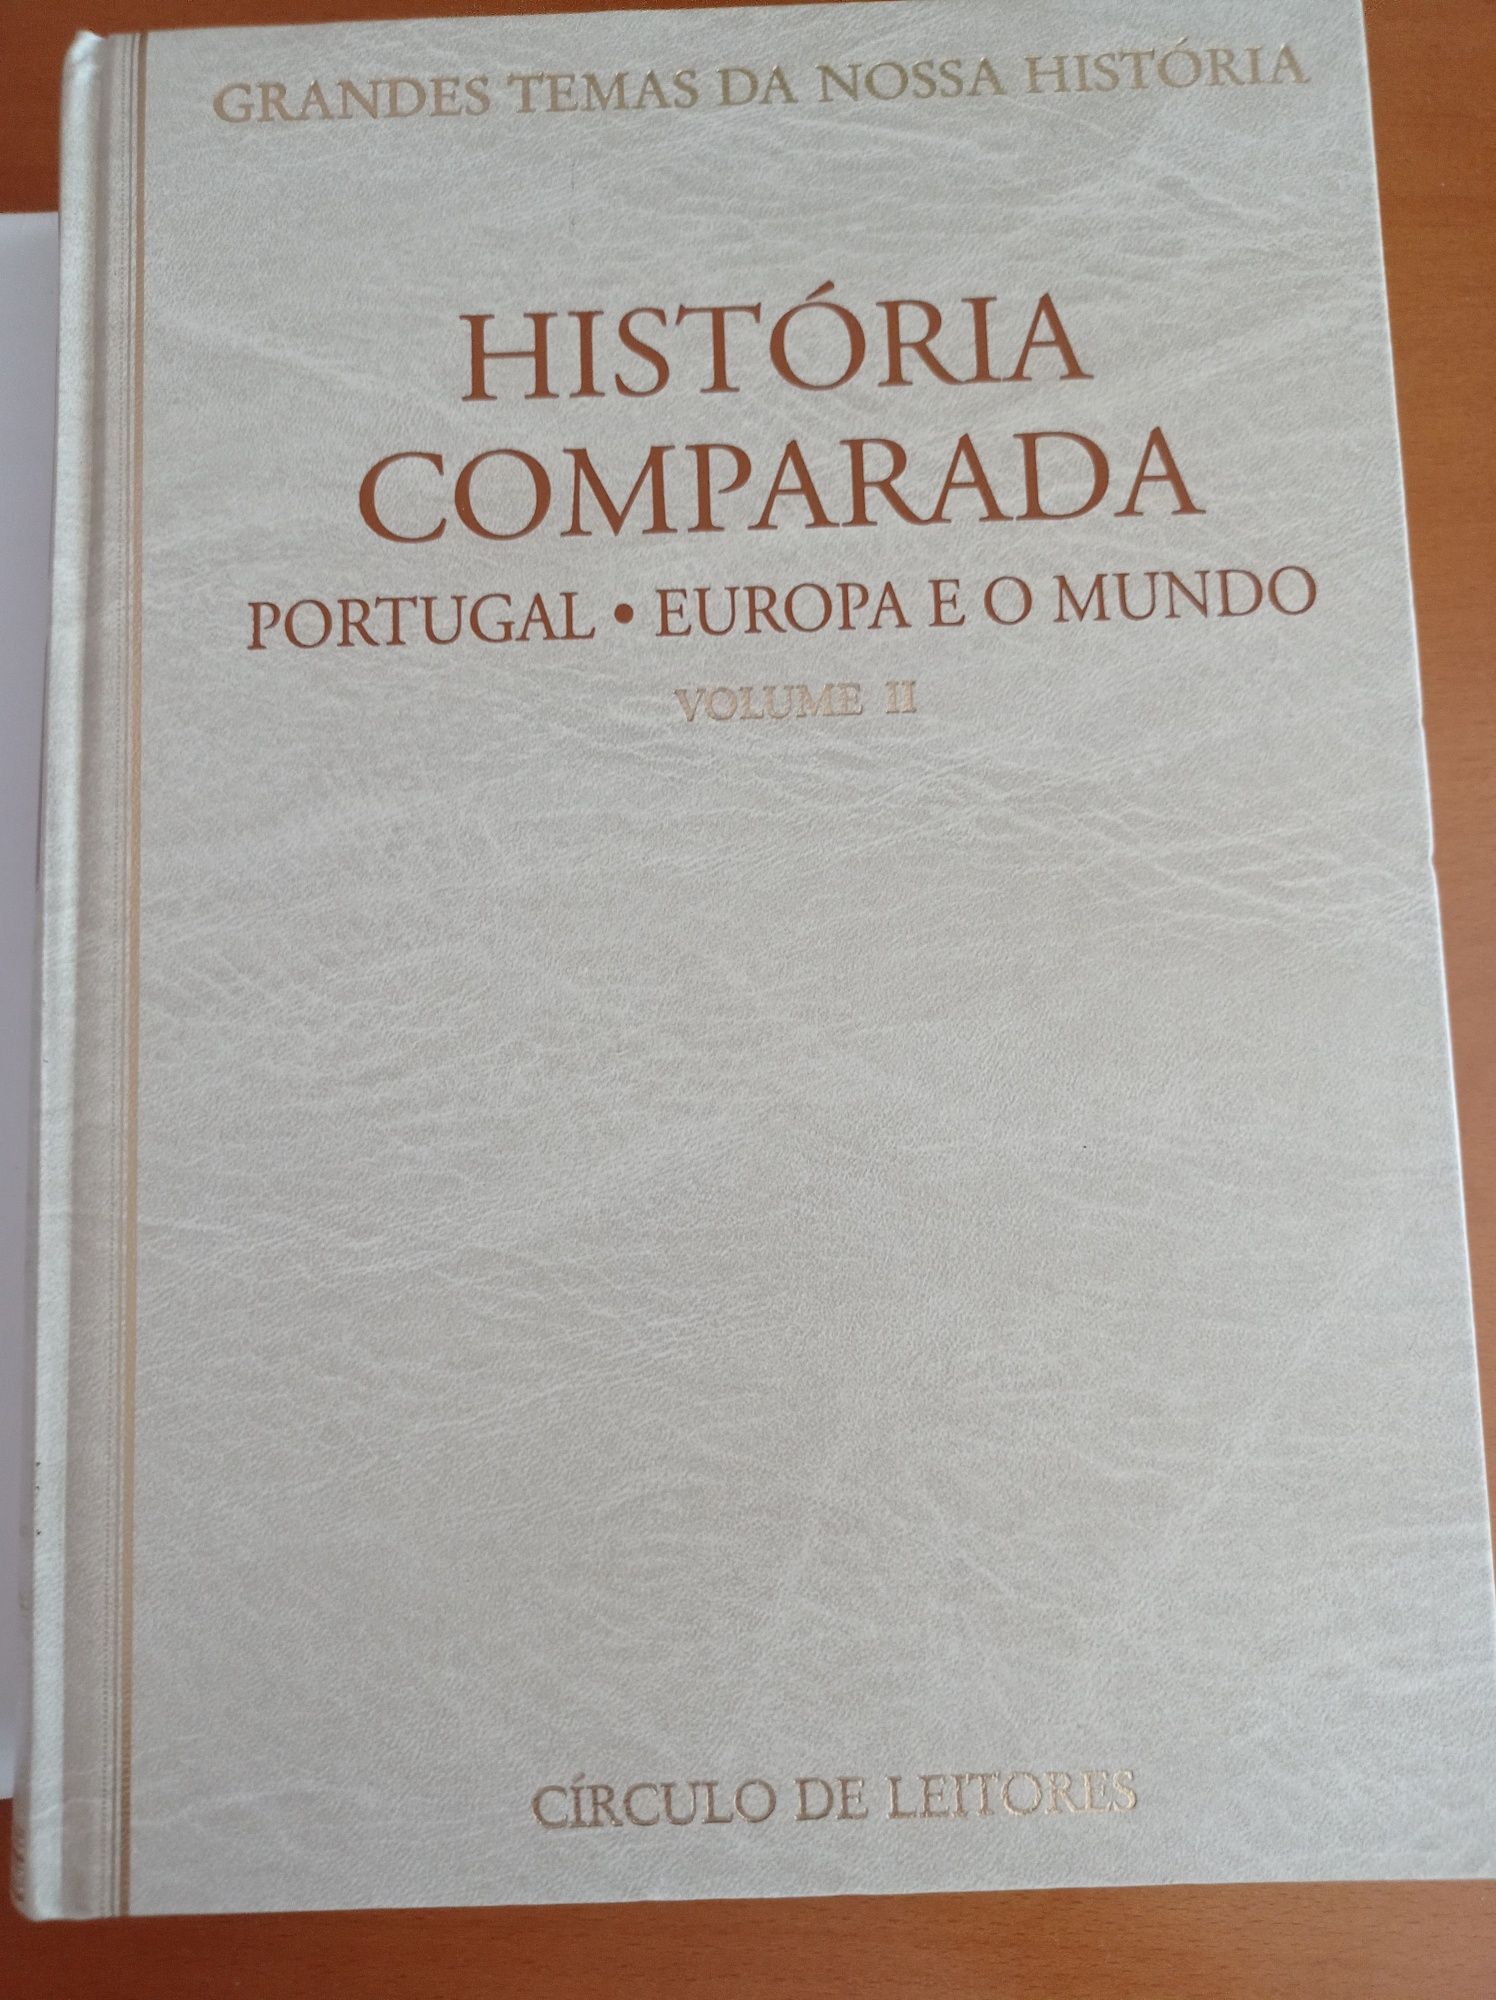 2 livros volume 1 e volume 2 História comparada de Antônio Simões Rodr